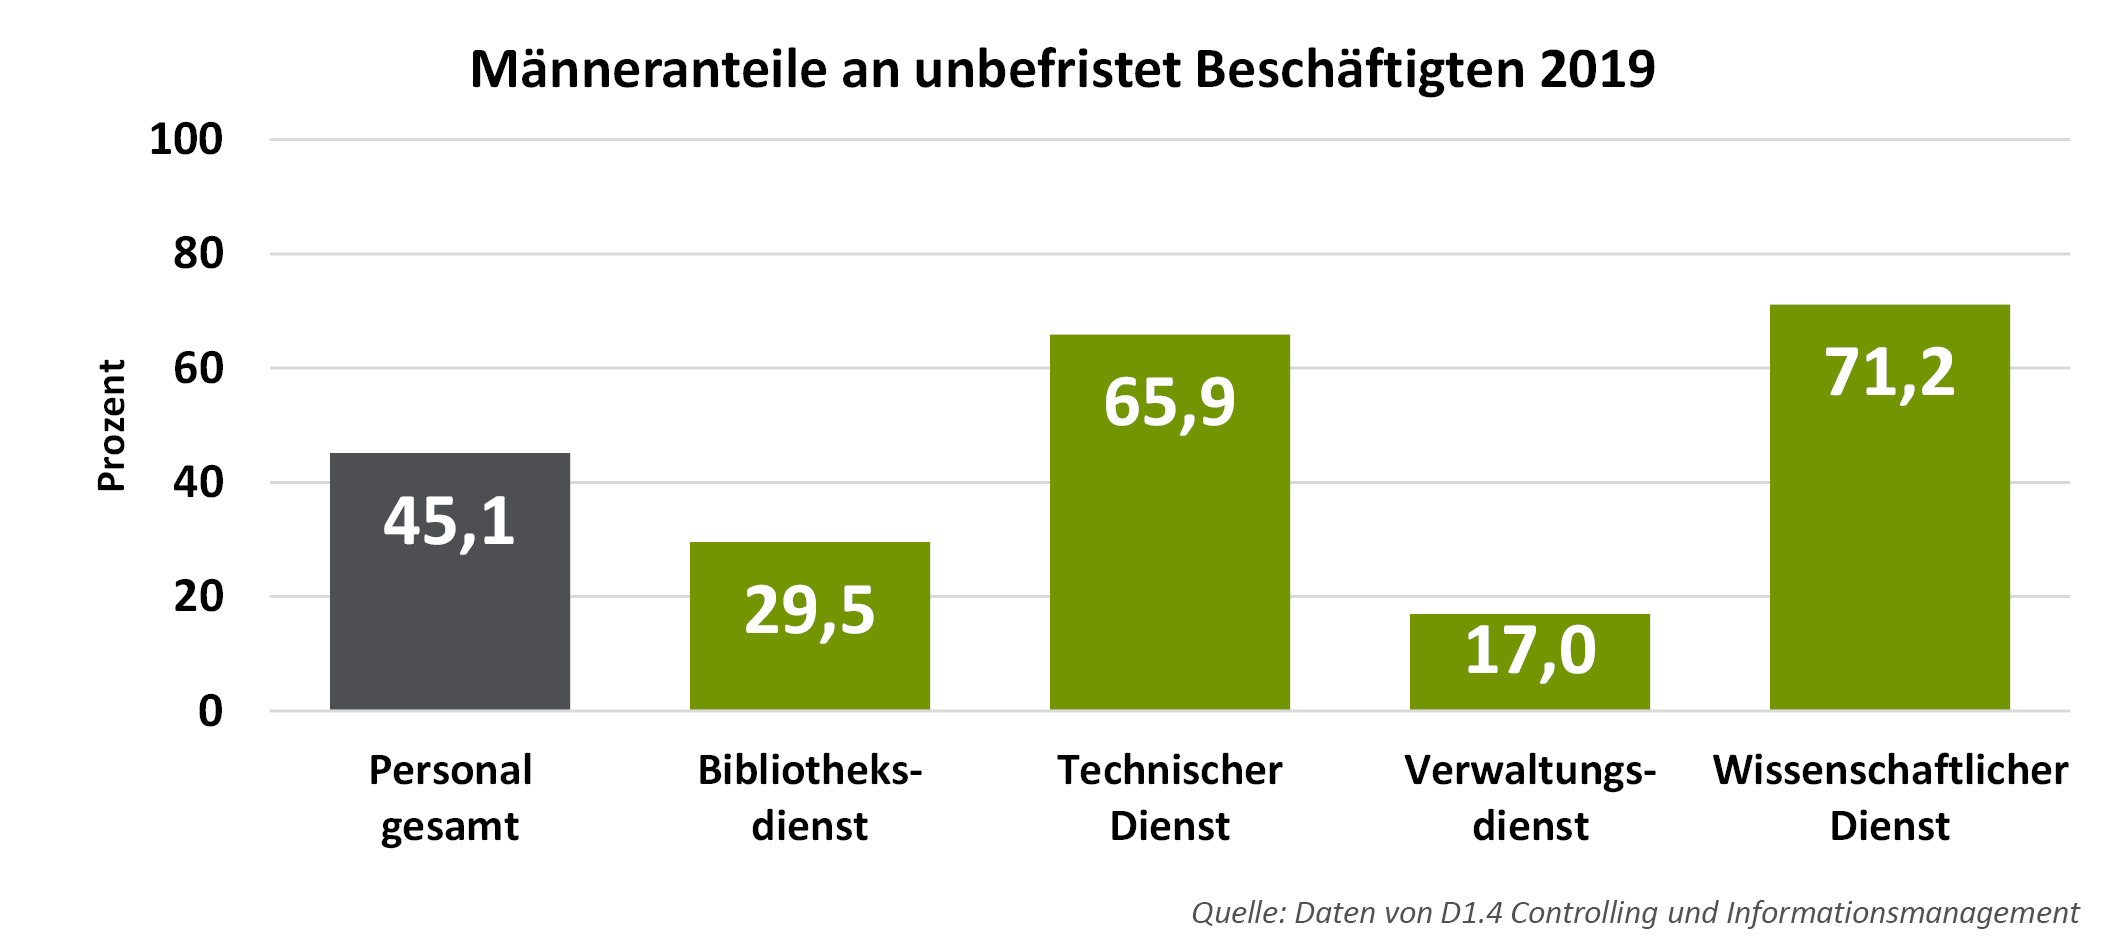 Männeranteile an unbefristet Beschäftigten an der Universität Freiburg 2019. Personal gesamt: 45,1 %. Im Bibliotheksdienst: 29,5 %. Im technischen Dienst: 65,9 %. Im Verwaltungsdienst: 17,0 %. Im wissenschaftlichen Dienst: 71,2 %.